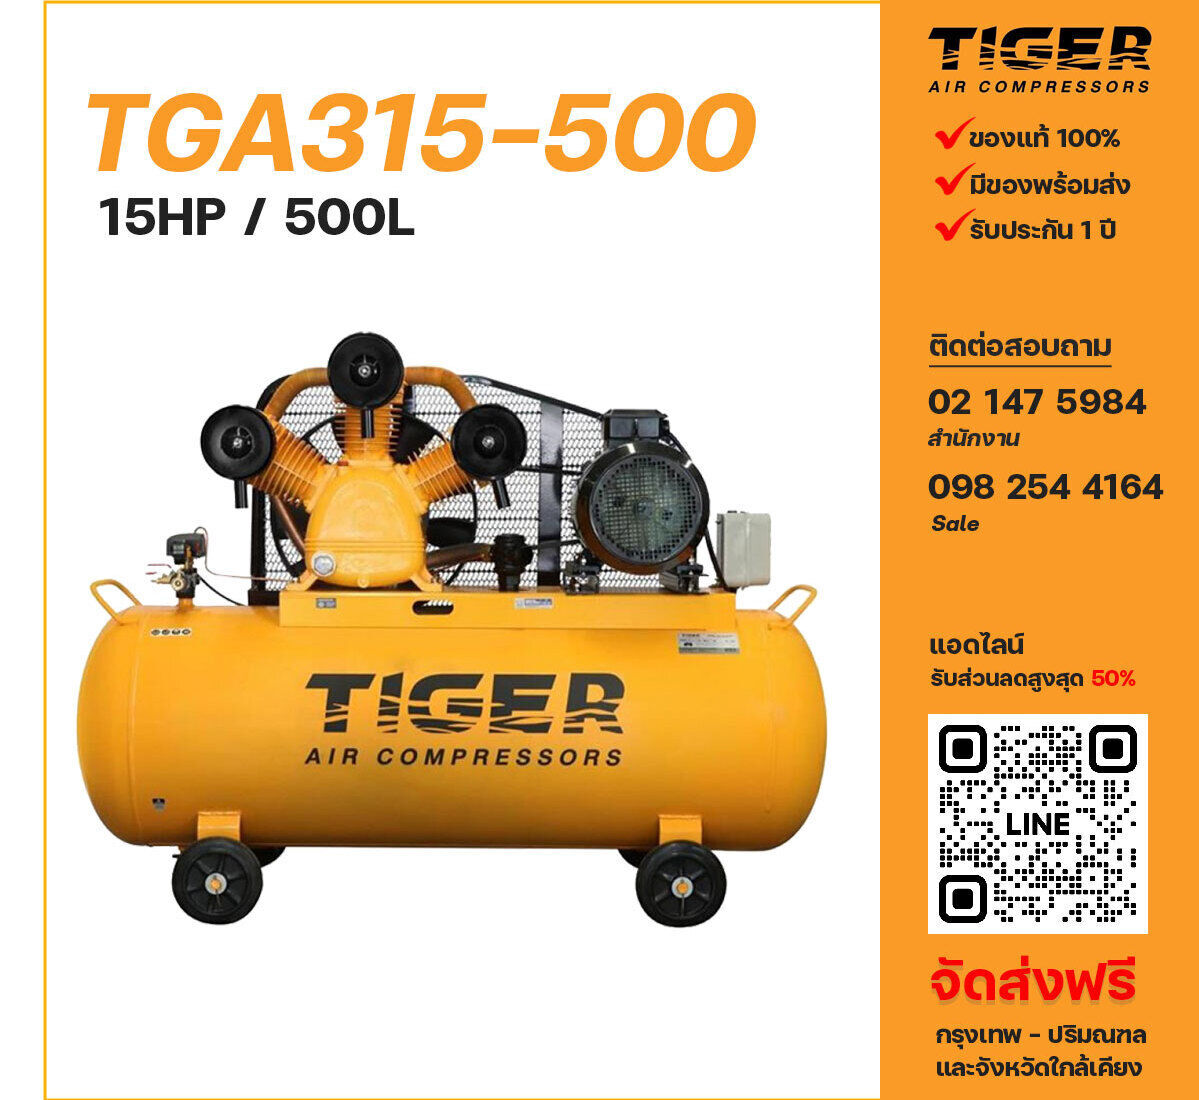 ปั๊มลมไทเกอร์ TIGER TGA315-500 380V ปั๊มลมลูกสูบ ขนาด 3 สูบ 15 แรงม้า 500 ลิตร TIGER พร้อมมอเตอร์ ไฟ 380V ส่งฟรี กรุงเทพฯ-ปริมณฑล รับประกัน 1 ปี